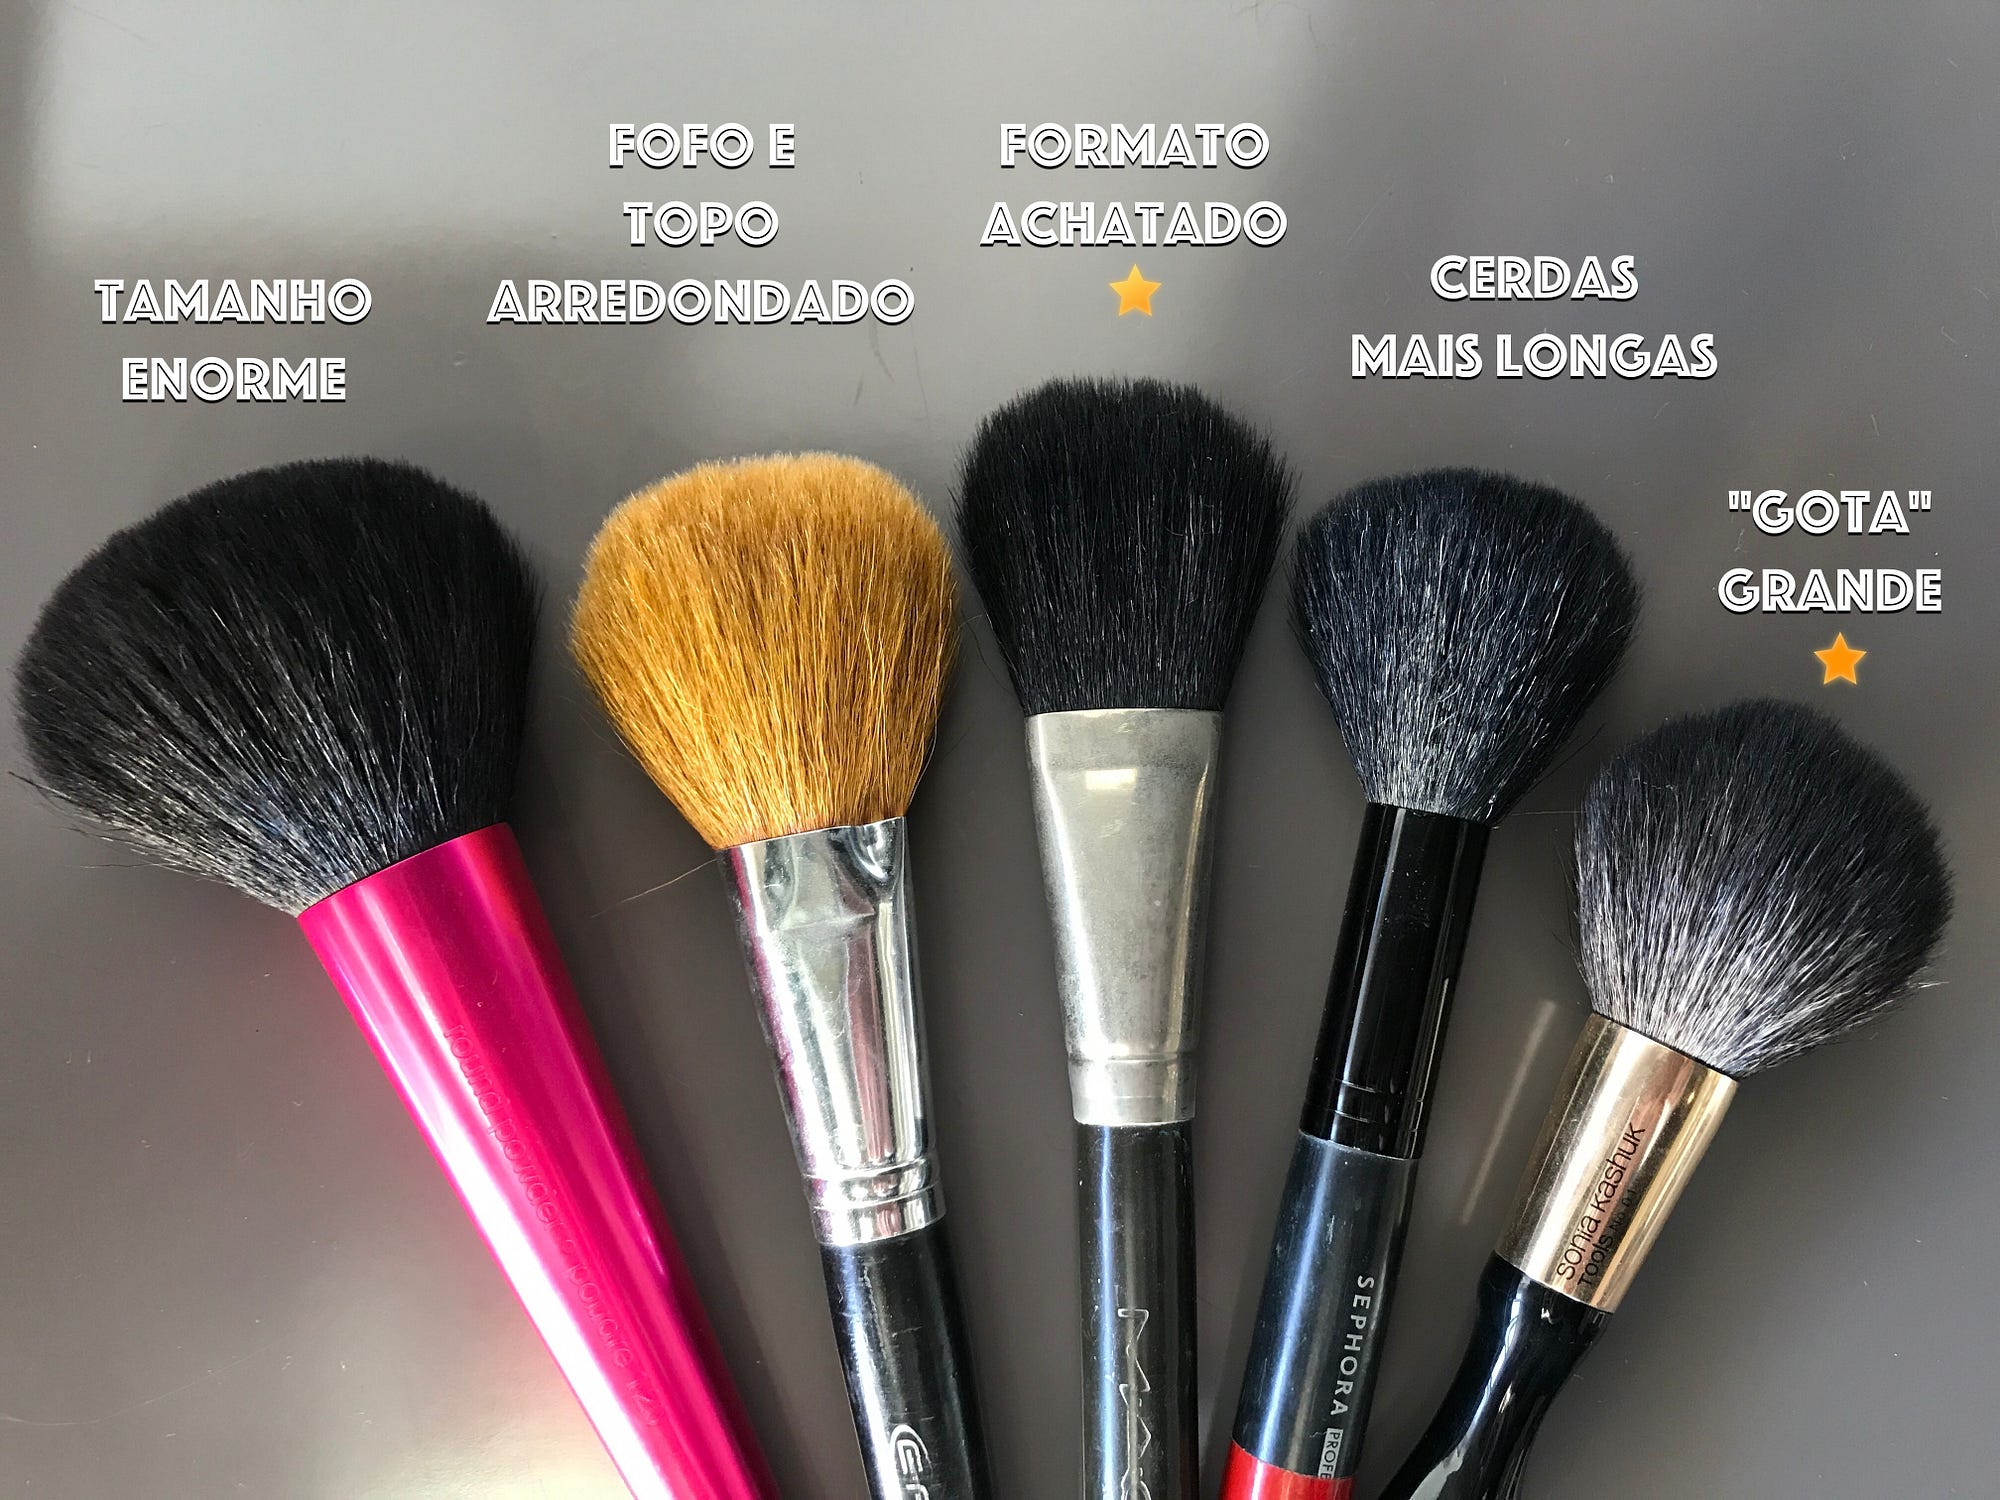 Utilidades extras do pincel de pó na sua maquiagem! | by Paola Gavazzi |  TRUQUES DE MAQUIAGEM - Paola Gavazzi